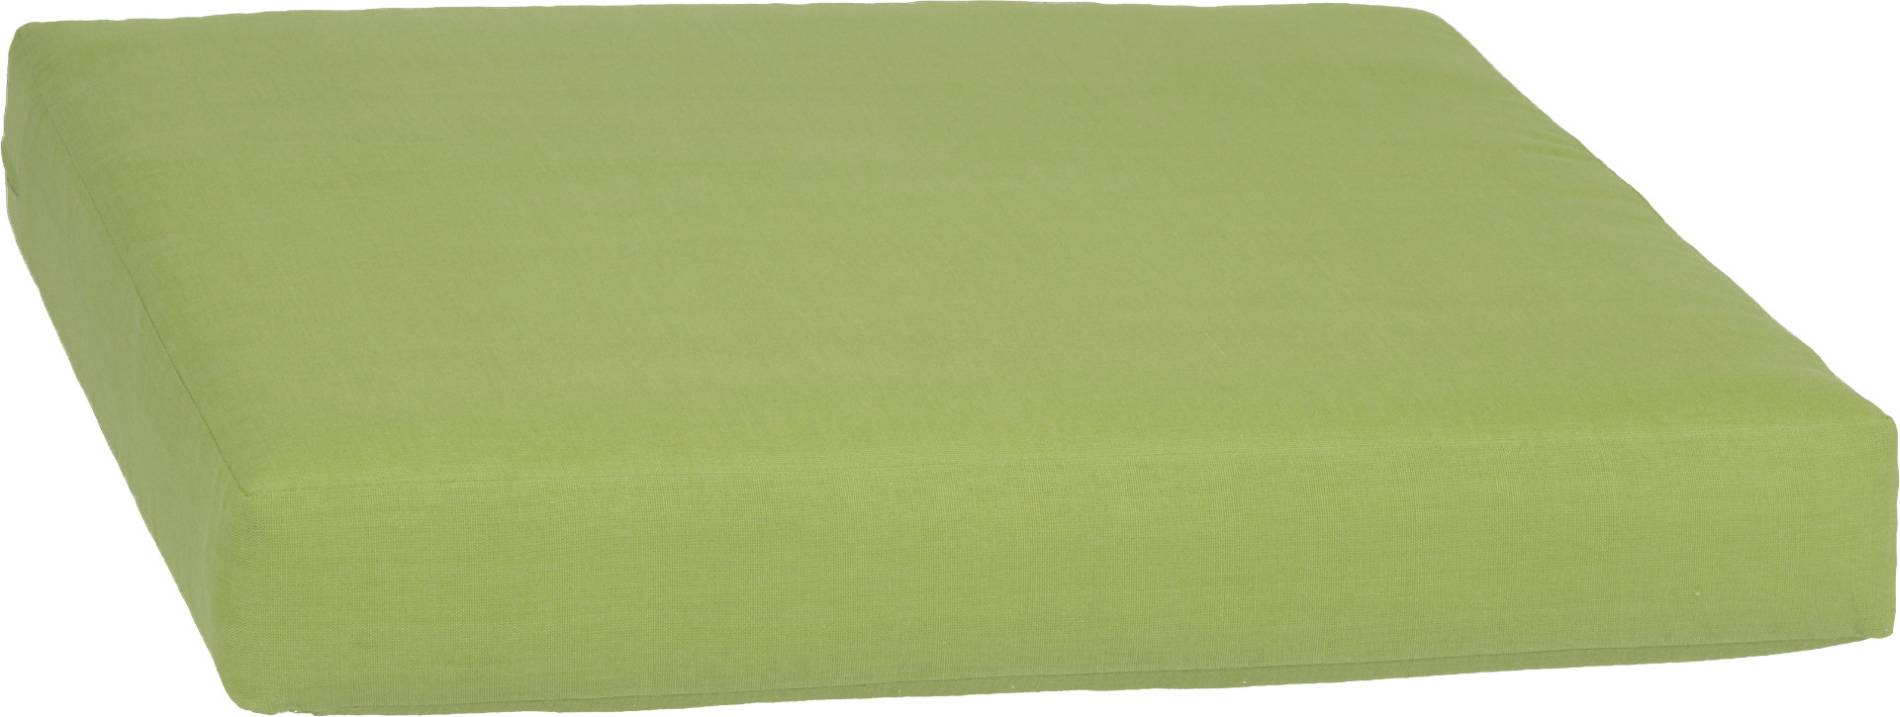 acamp Weekend Sitzkissen für Basiselement apfelgrün 70 x 70 x 8 cm